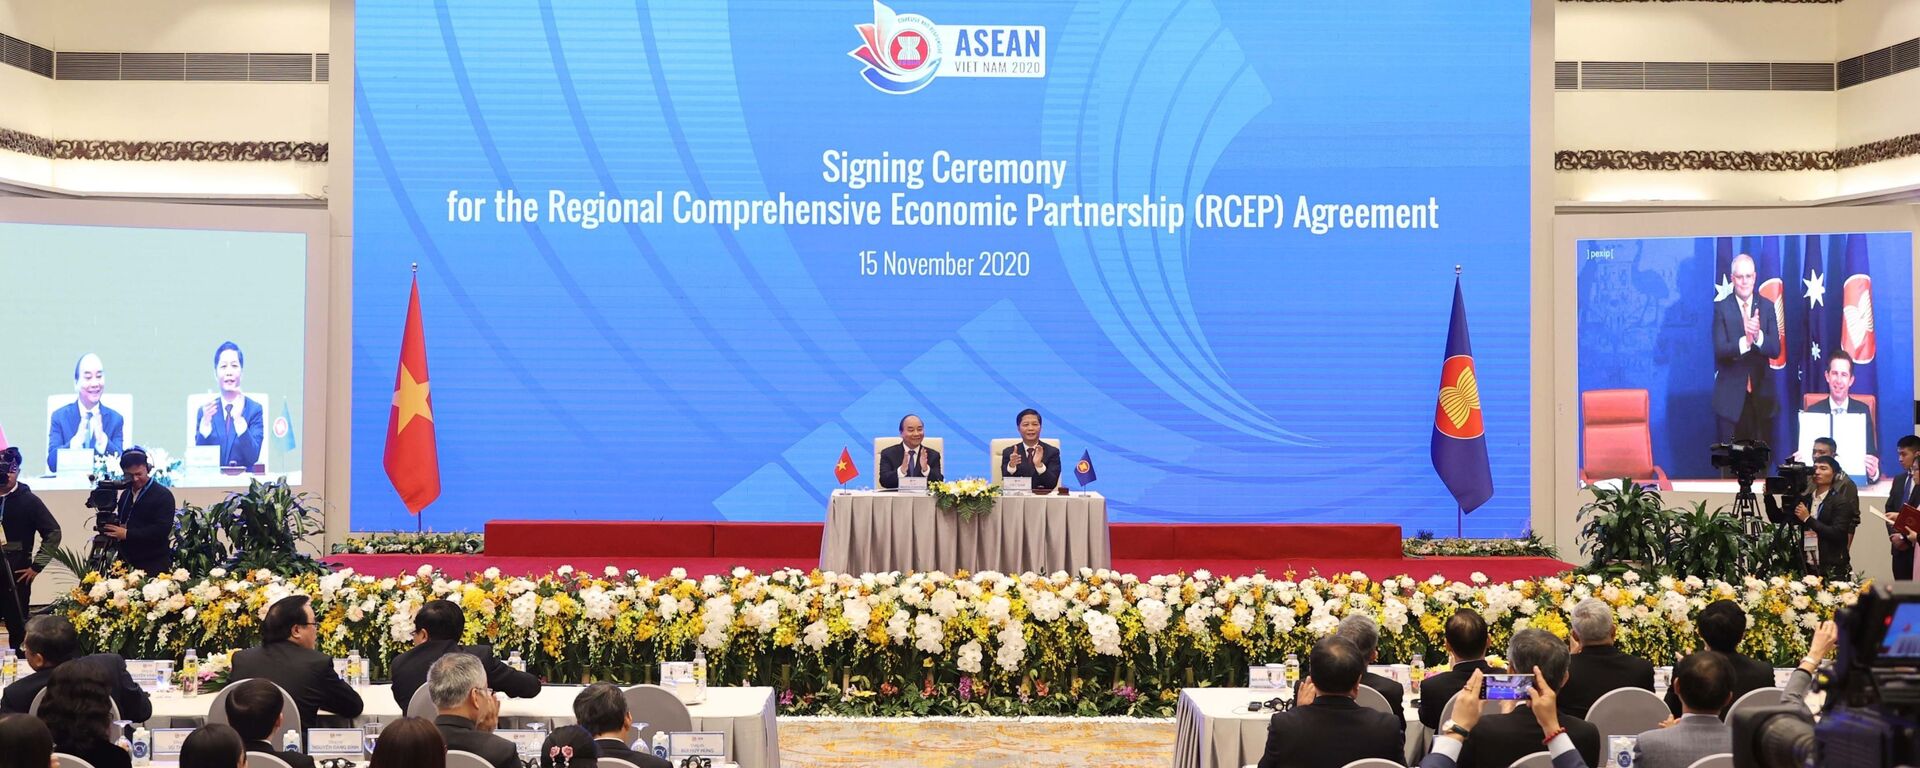 Thủ tướng Nguyễn Xuân Phúc, Chủ tịch ASEAN 2020 cùng các nhà lãnh đạo cấp cao chứng kiến Lễ ký Hiệp định Đối tác Kinh tế Toàn diện Khu vực RCEP.  - Sputnik Việt Nam, 1920, 20.11.2020